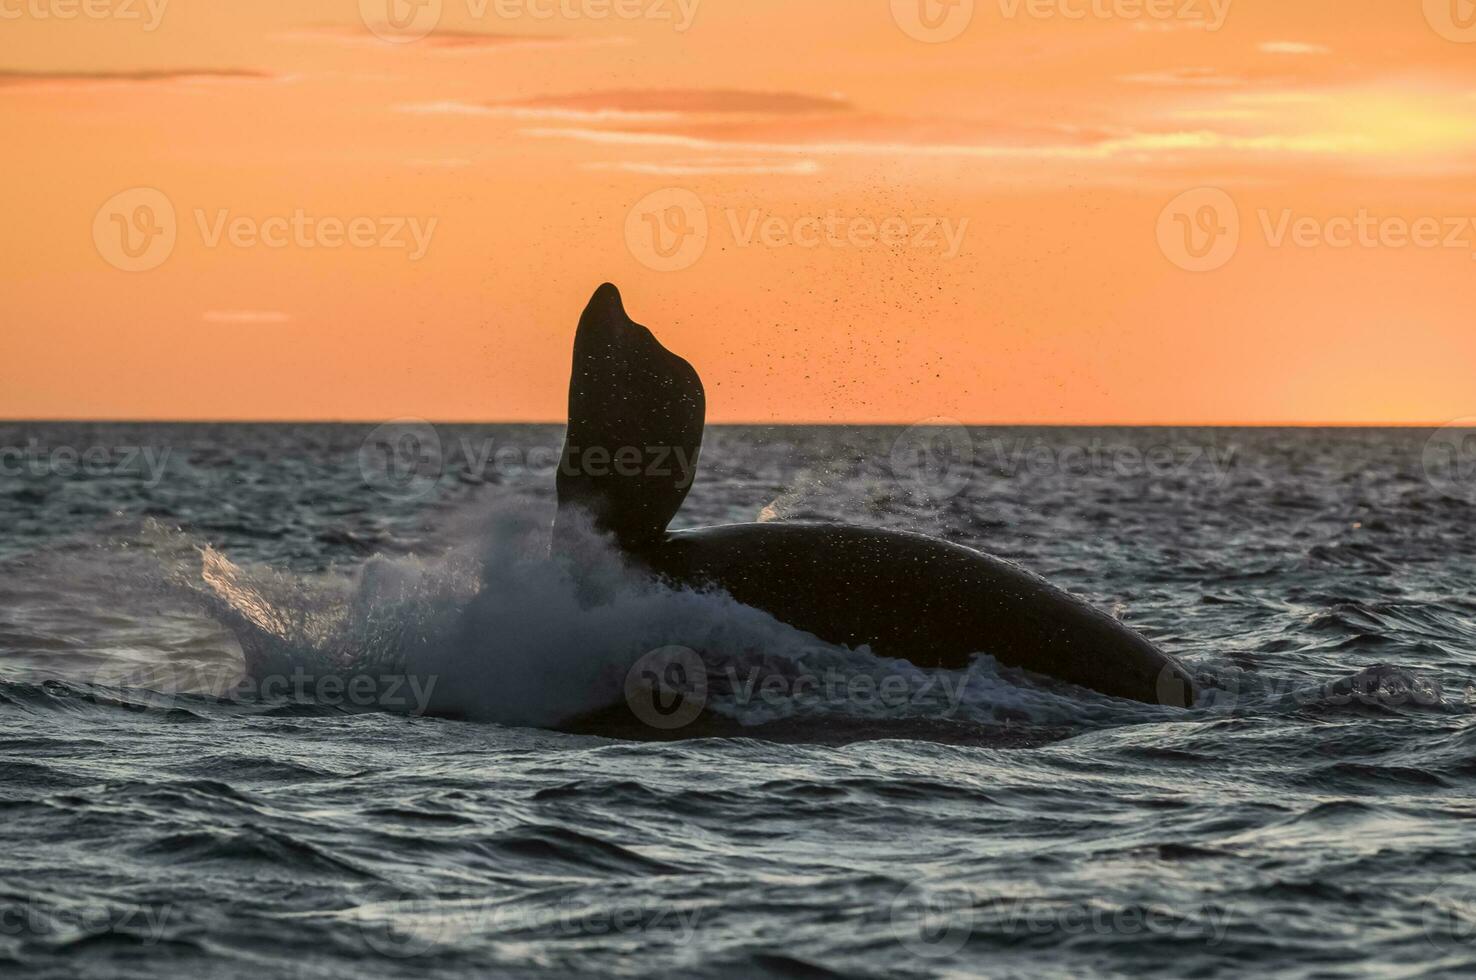 del Sur Derecha ballena saltando , península valdés Patagonia , argentina foto